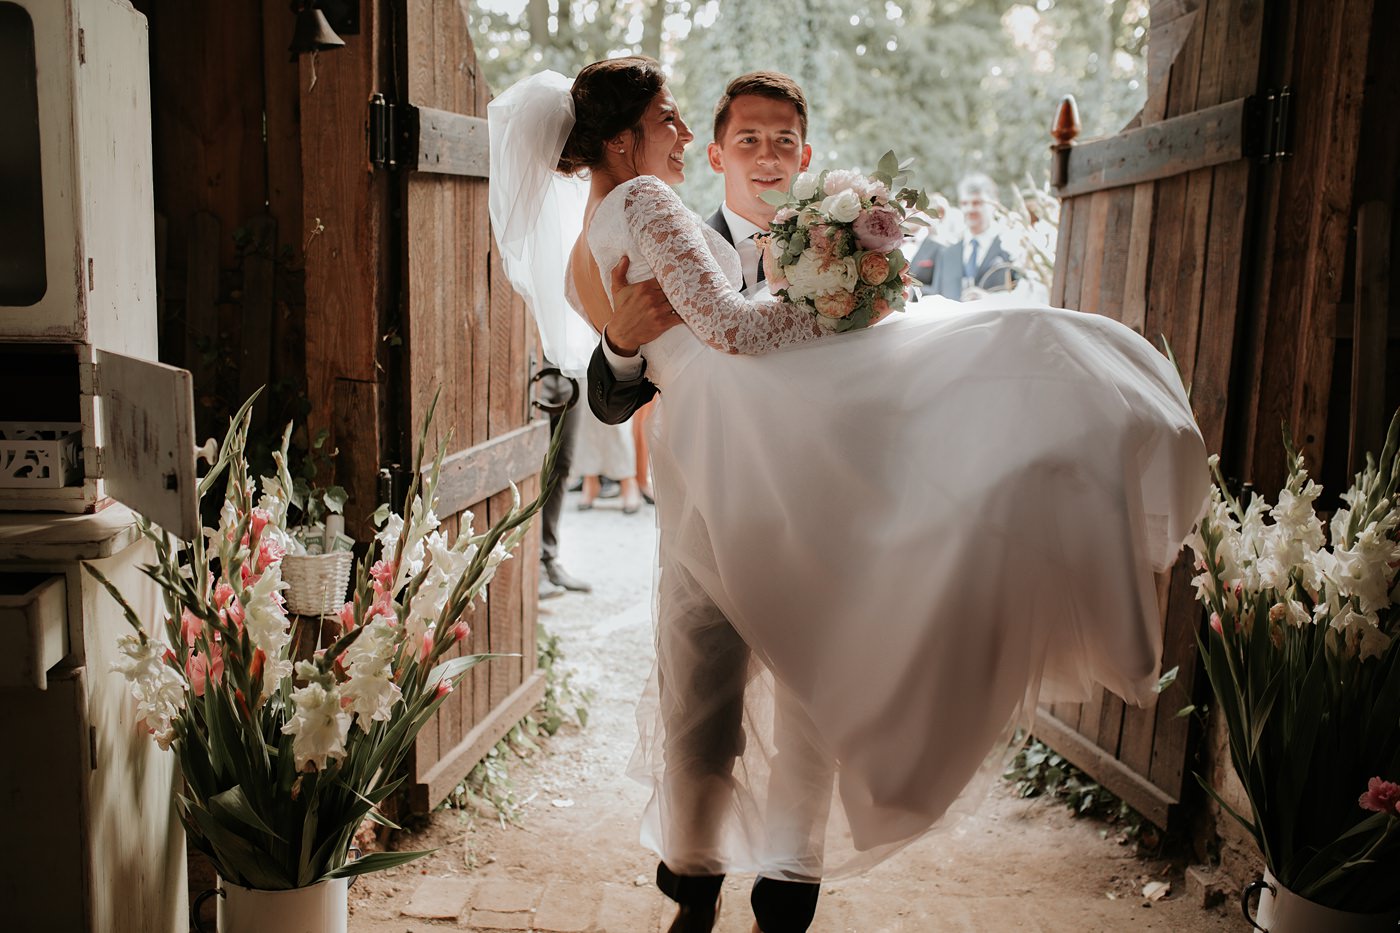 Dominika & Aleksander - Rustykalne wesele w stodole - Baborówko 98